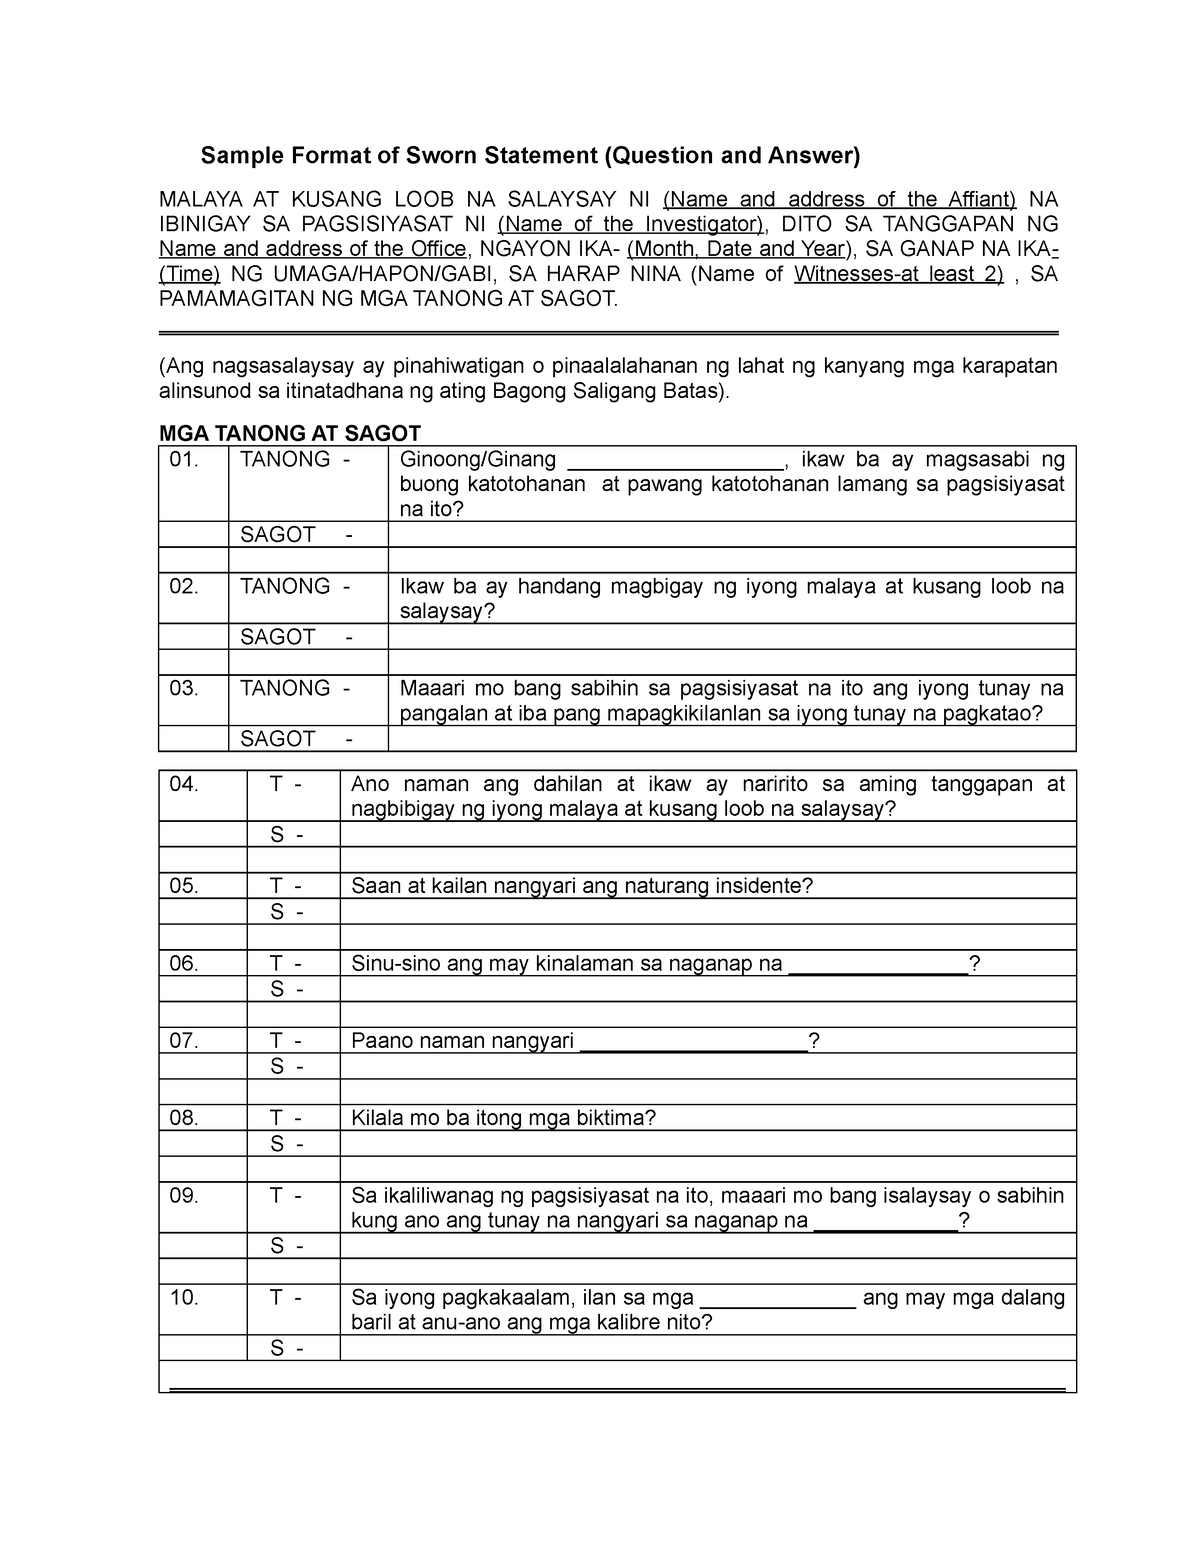 Sample Format Of Sworn Statement Or Sinumpaang Salaysay Sample Format Of Sworn Statement 0955